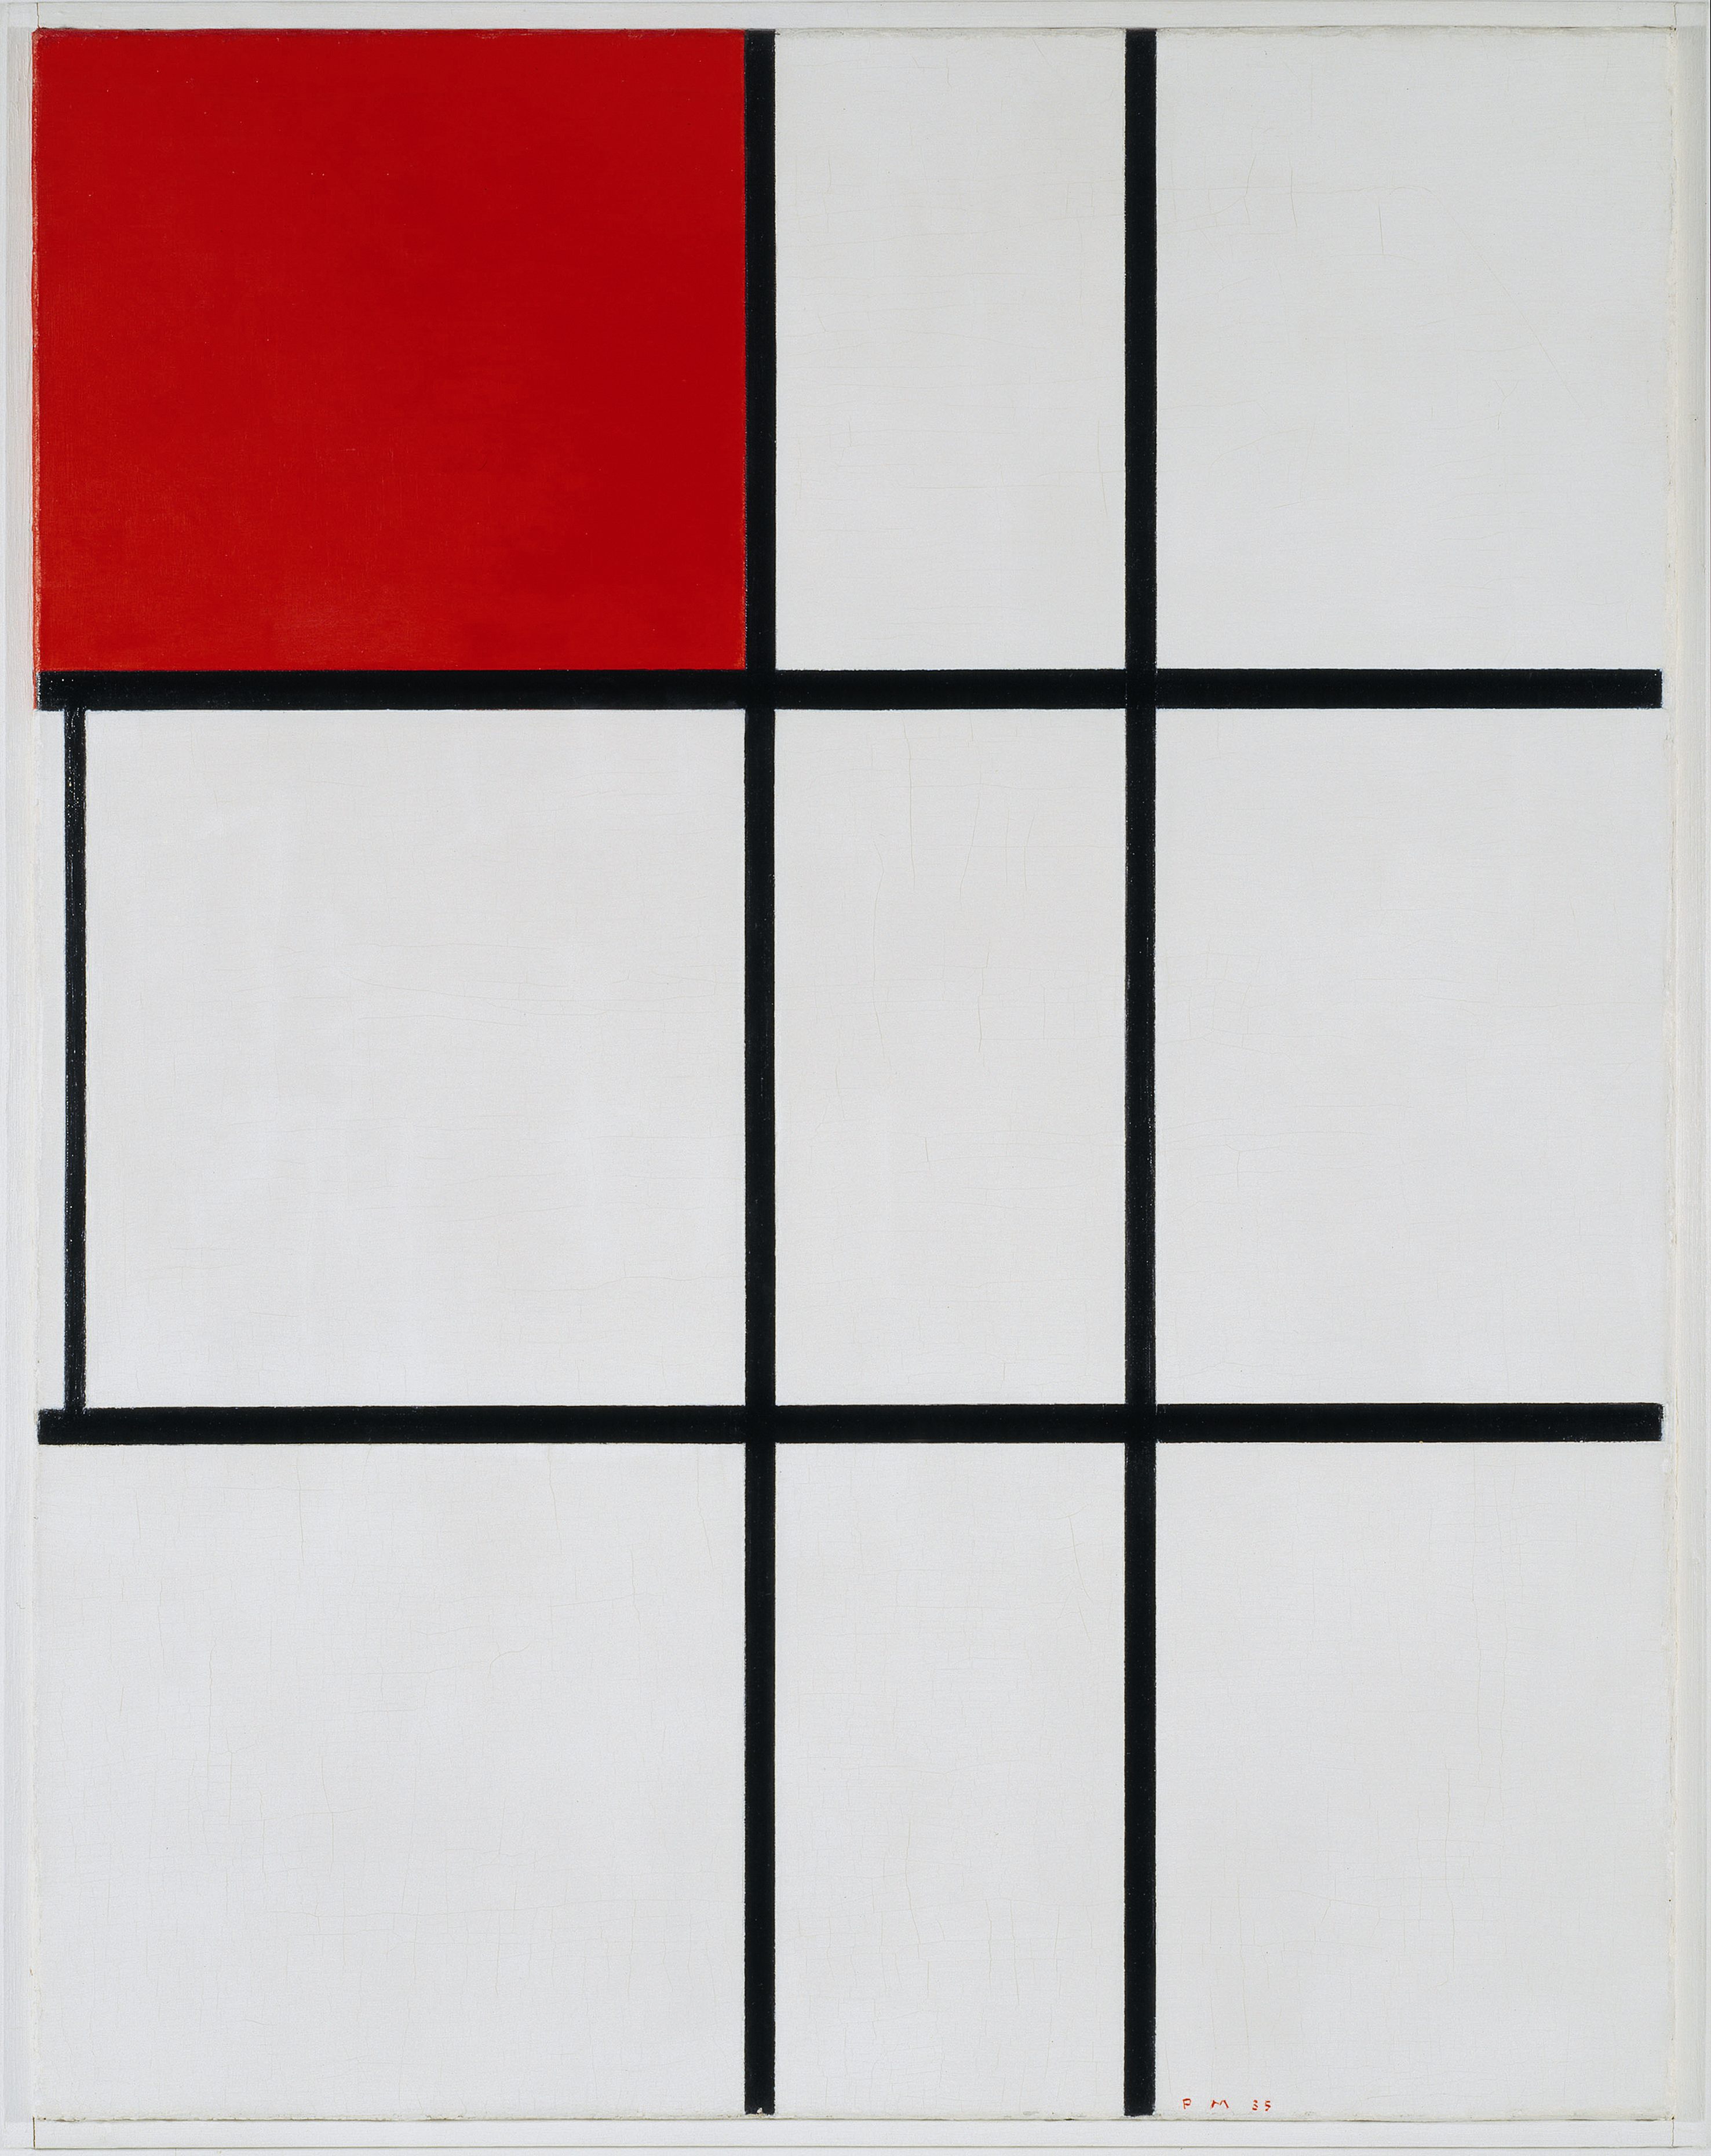 Komposition B (Nr.II) mit Red by Piet Mondrian - 1935 - 80.3 x 63.3 cm Tate Modern